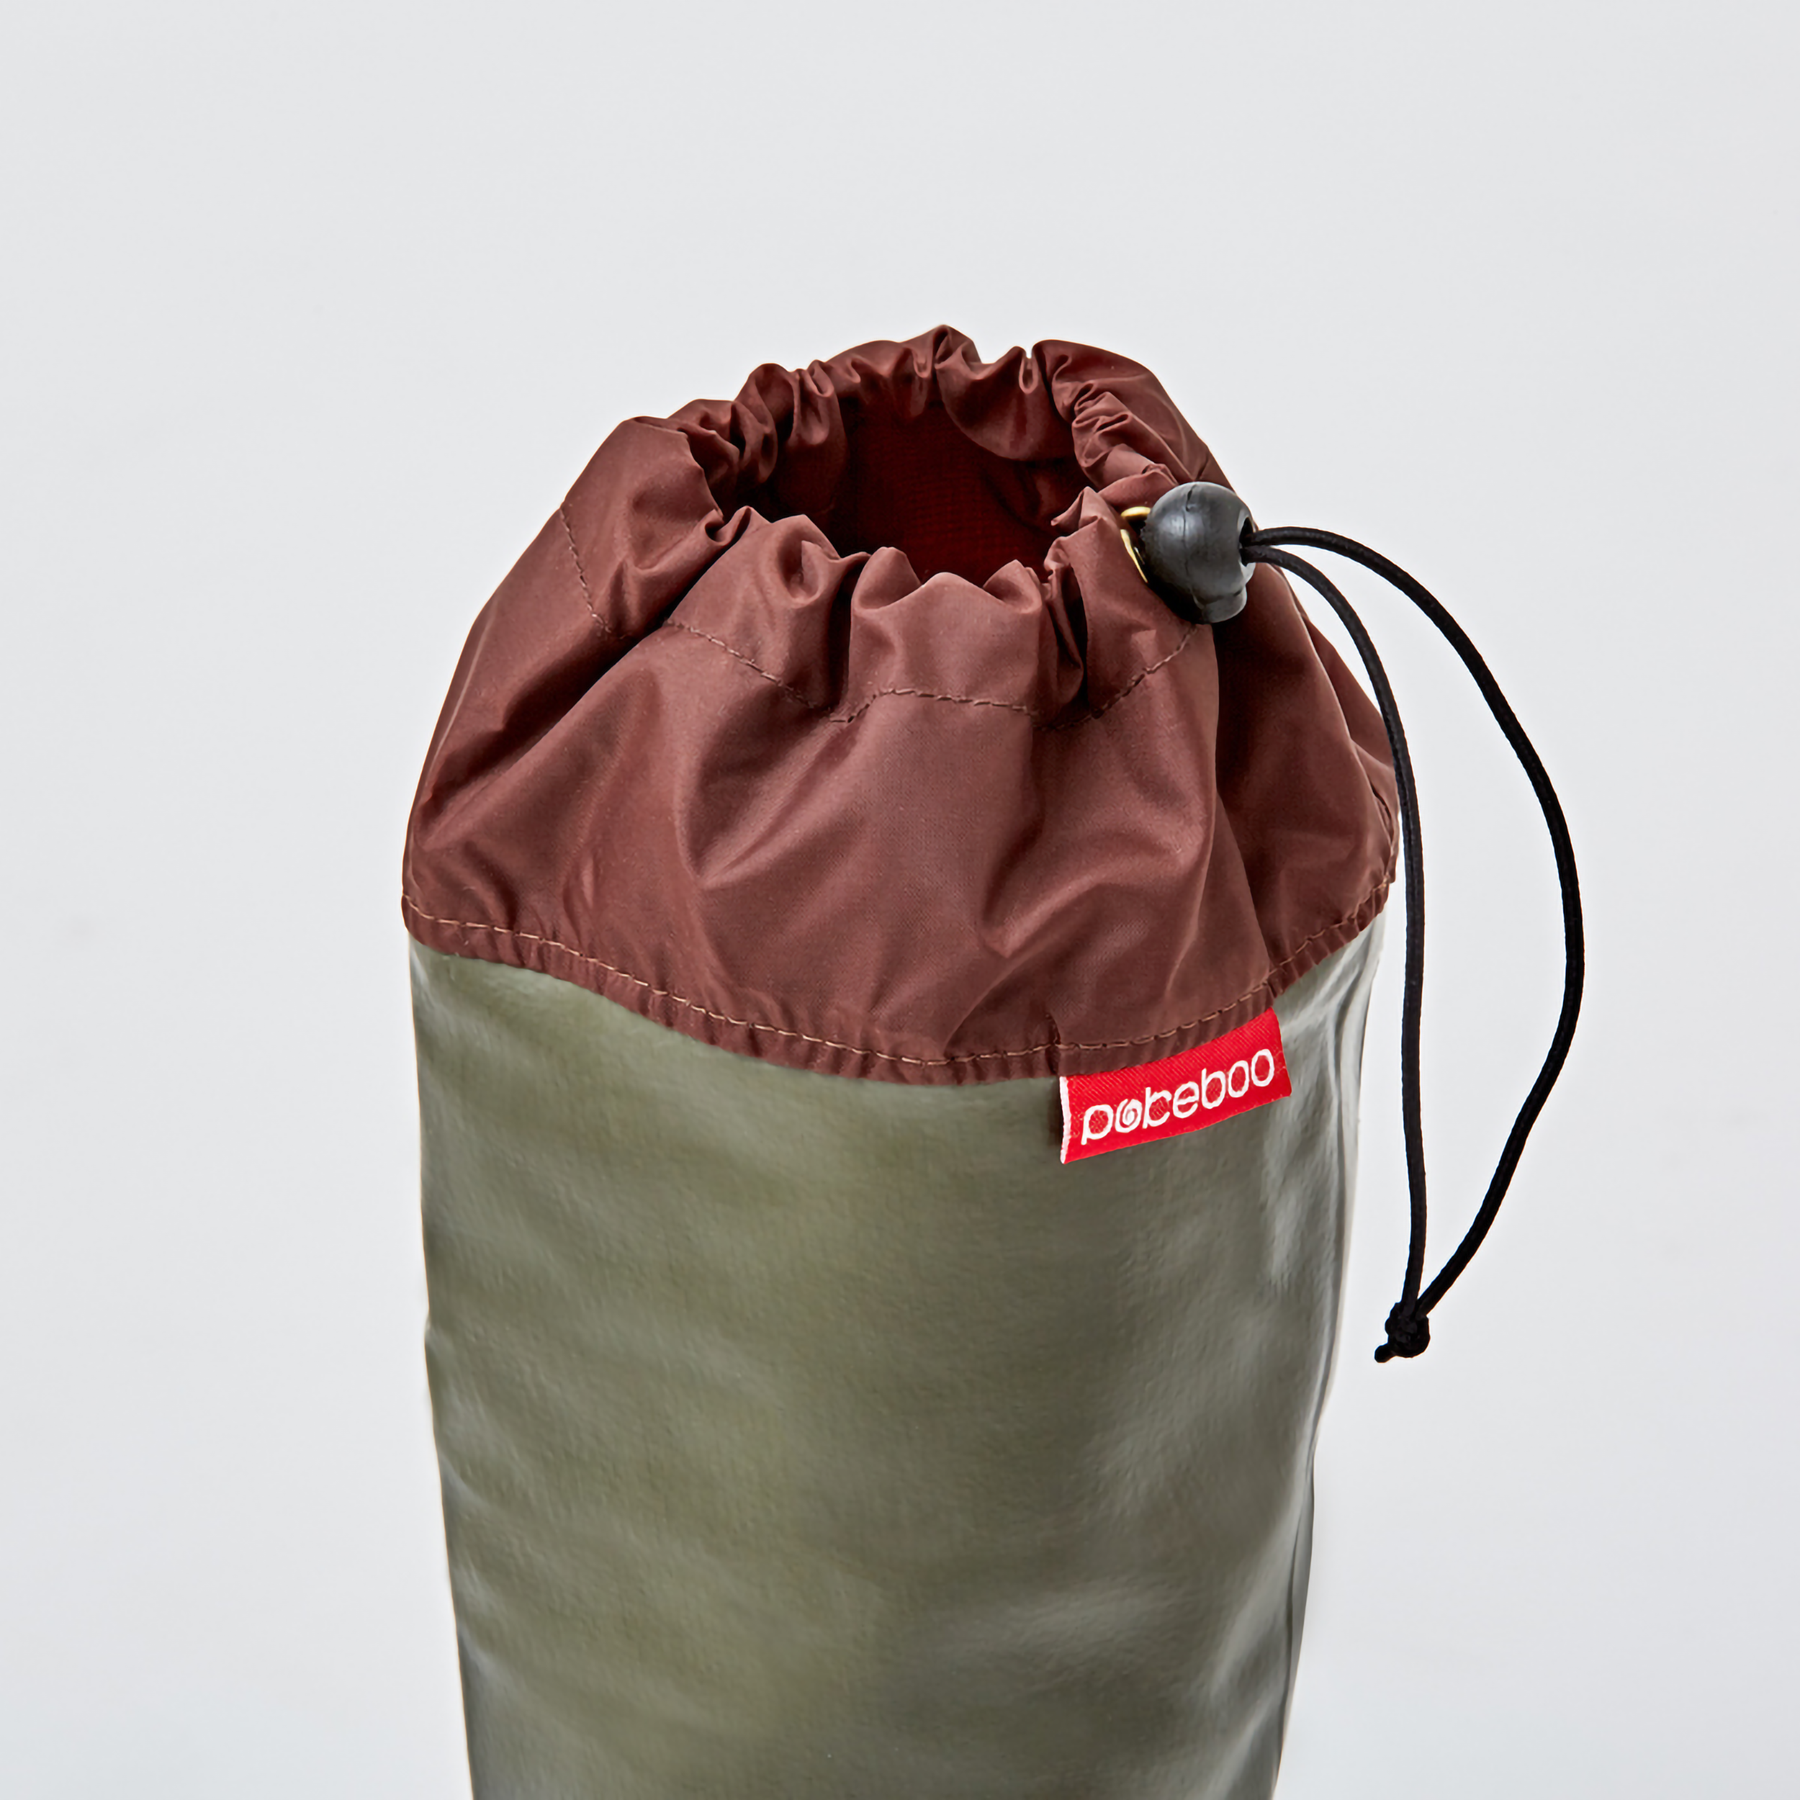 Pokeboo, Packable Rubber Rain Boots - Khaki, L